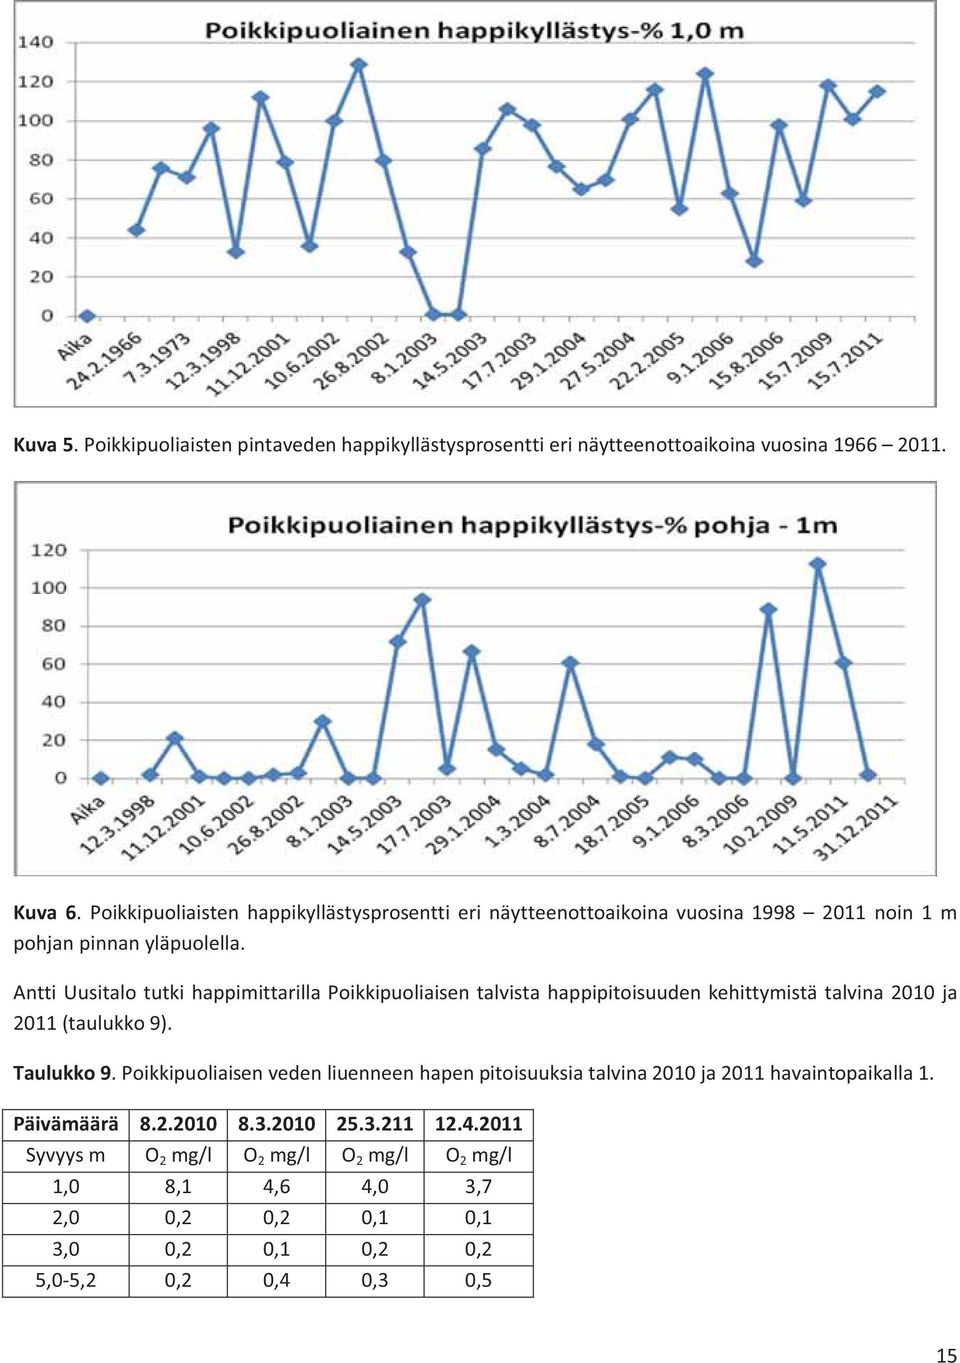 Antti Uusitalo tutki happimittarilla Poikkipuoliaisen talvista happipitoisuuden kehittymistä talvina 2010 ja 2011 (taulukko 9). Taulukko 9.